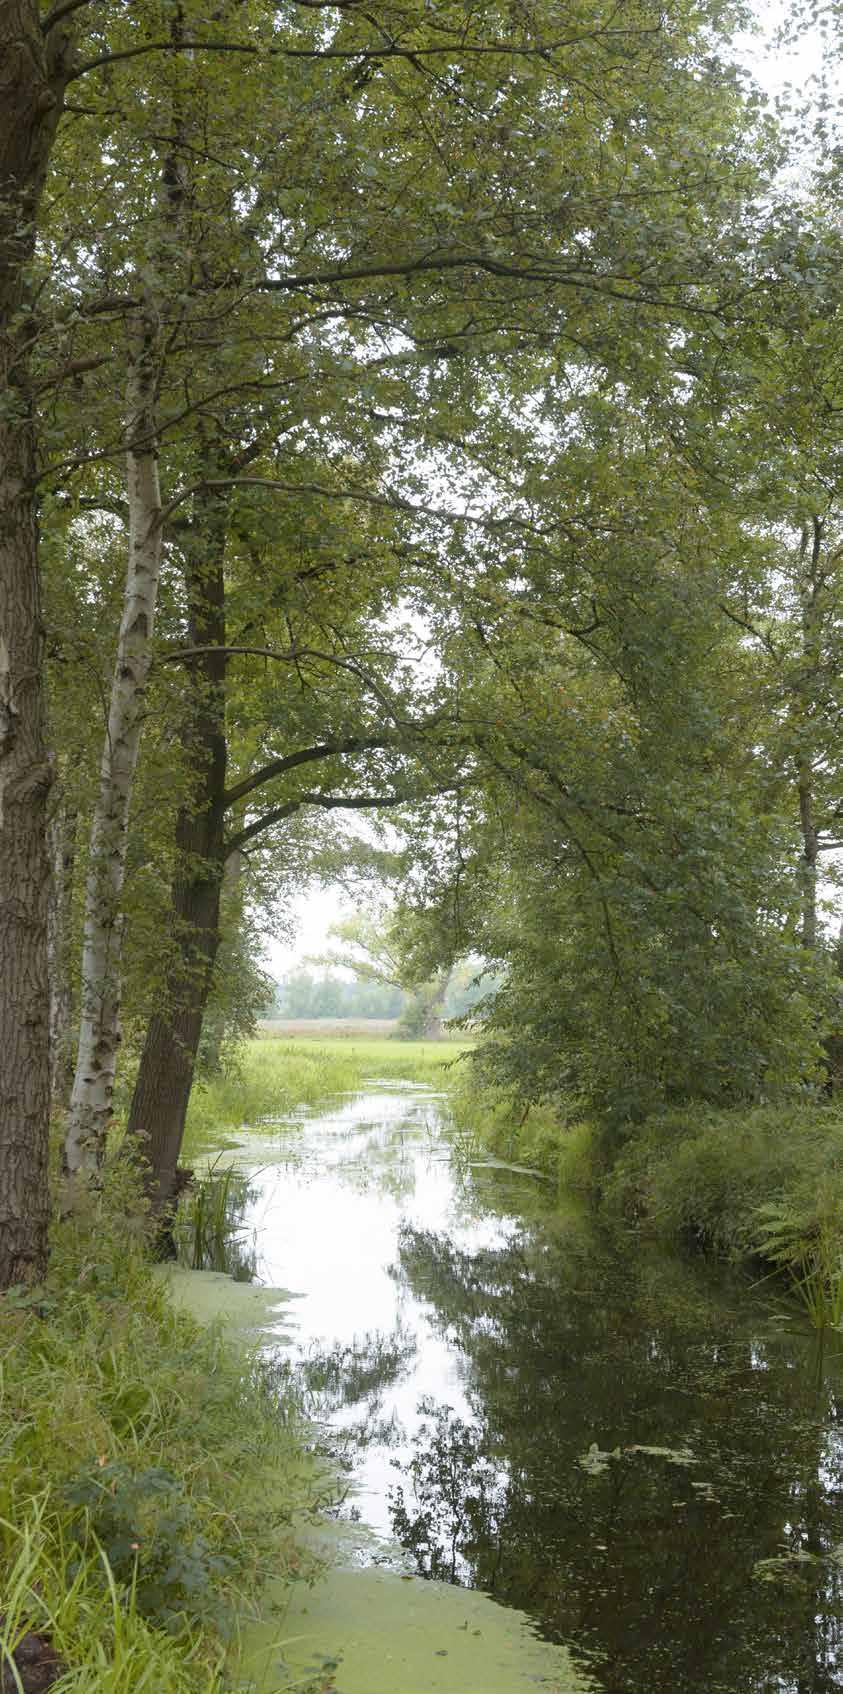 Praktische informatie Rondwandeling Rondwandeling ten zuiden van Bergeijk in het grensgebied met België. De route voert door een natuurgebied met voormalige visvijvers en door oude vloeiweidegebieden.